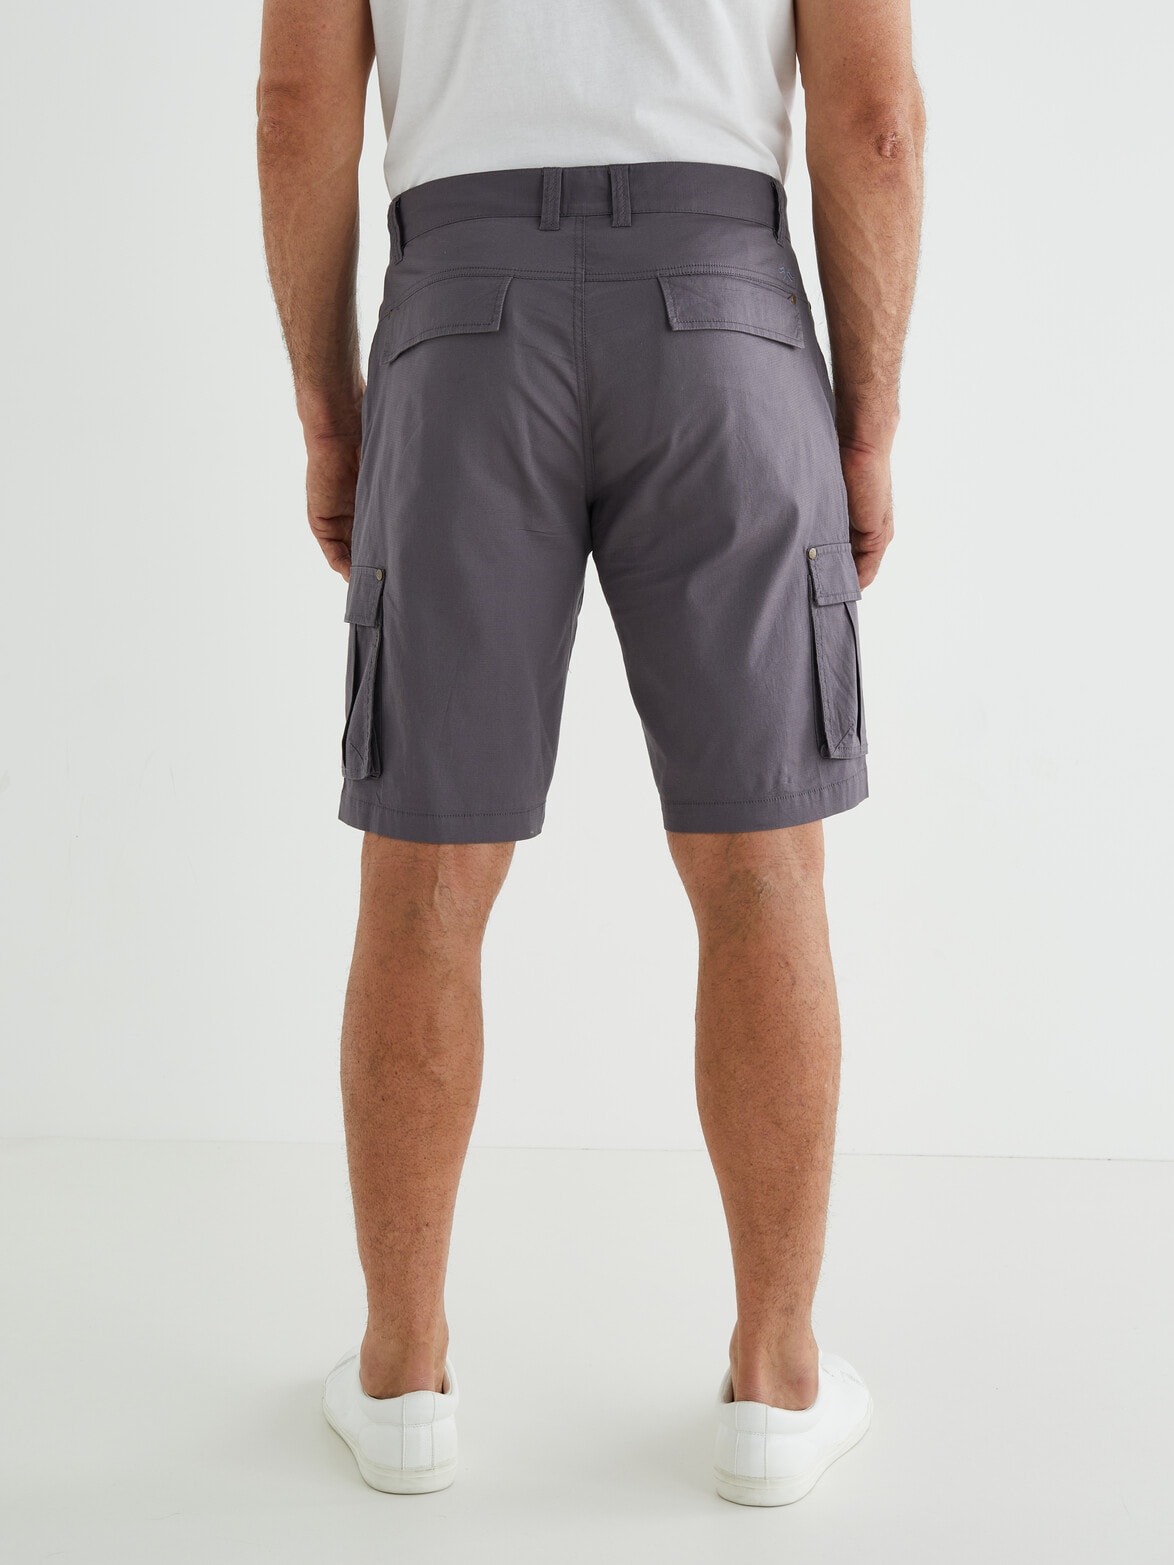 Logan Decoy Short, Charcoal - Shorts